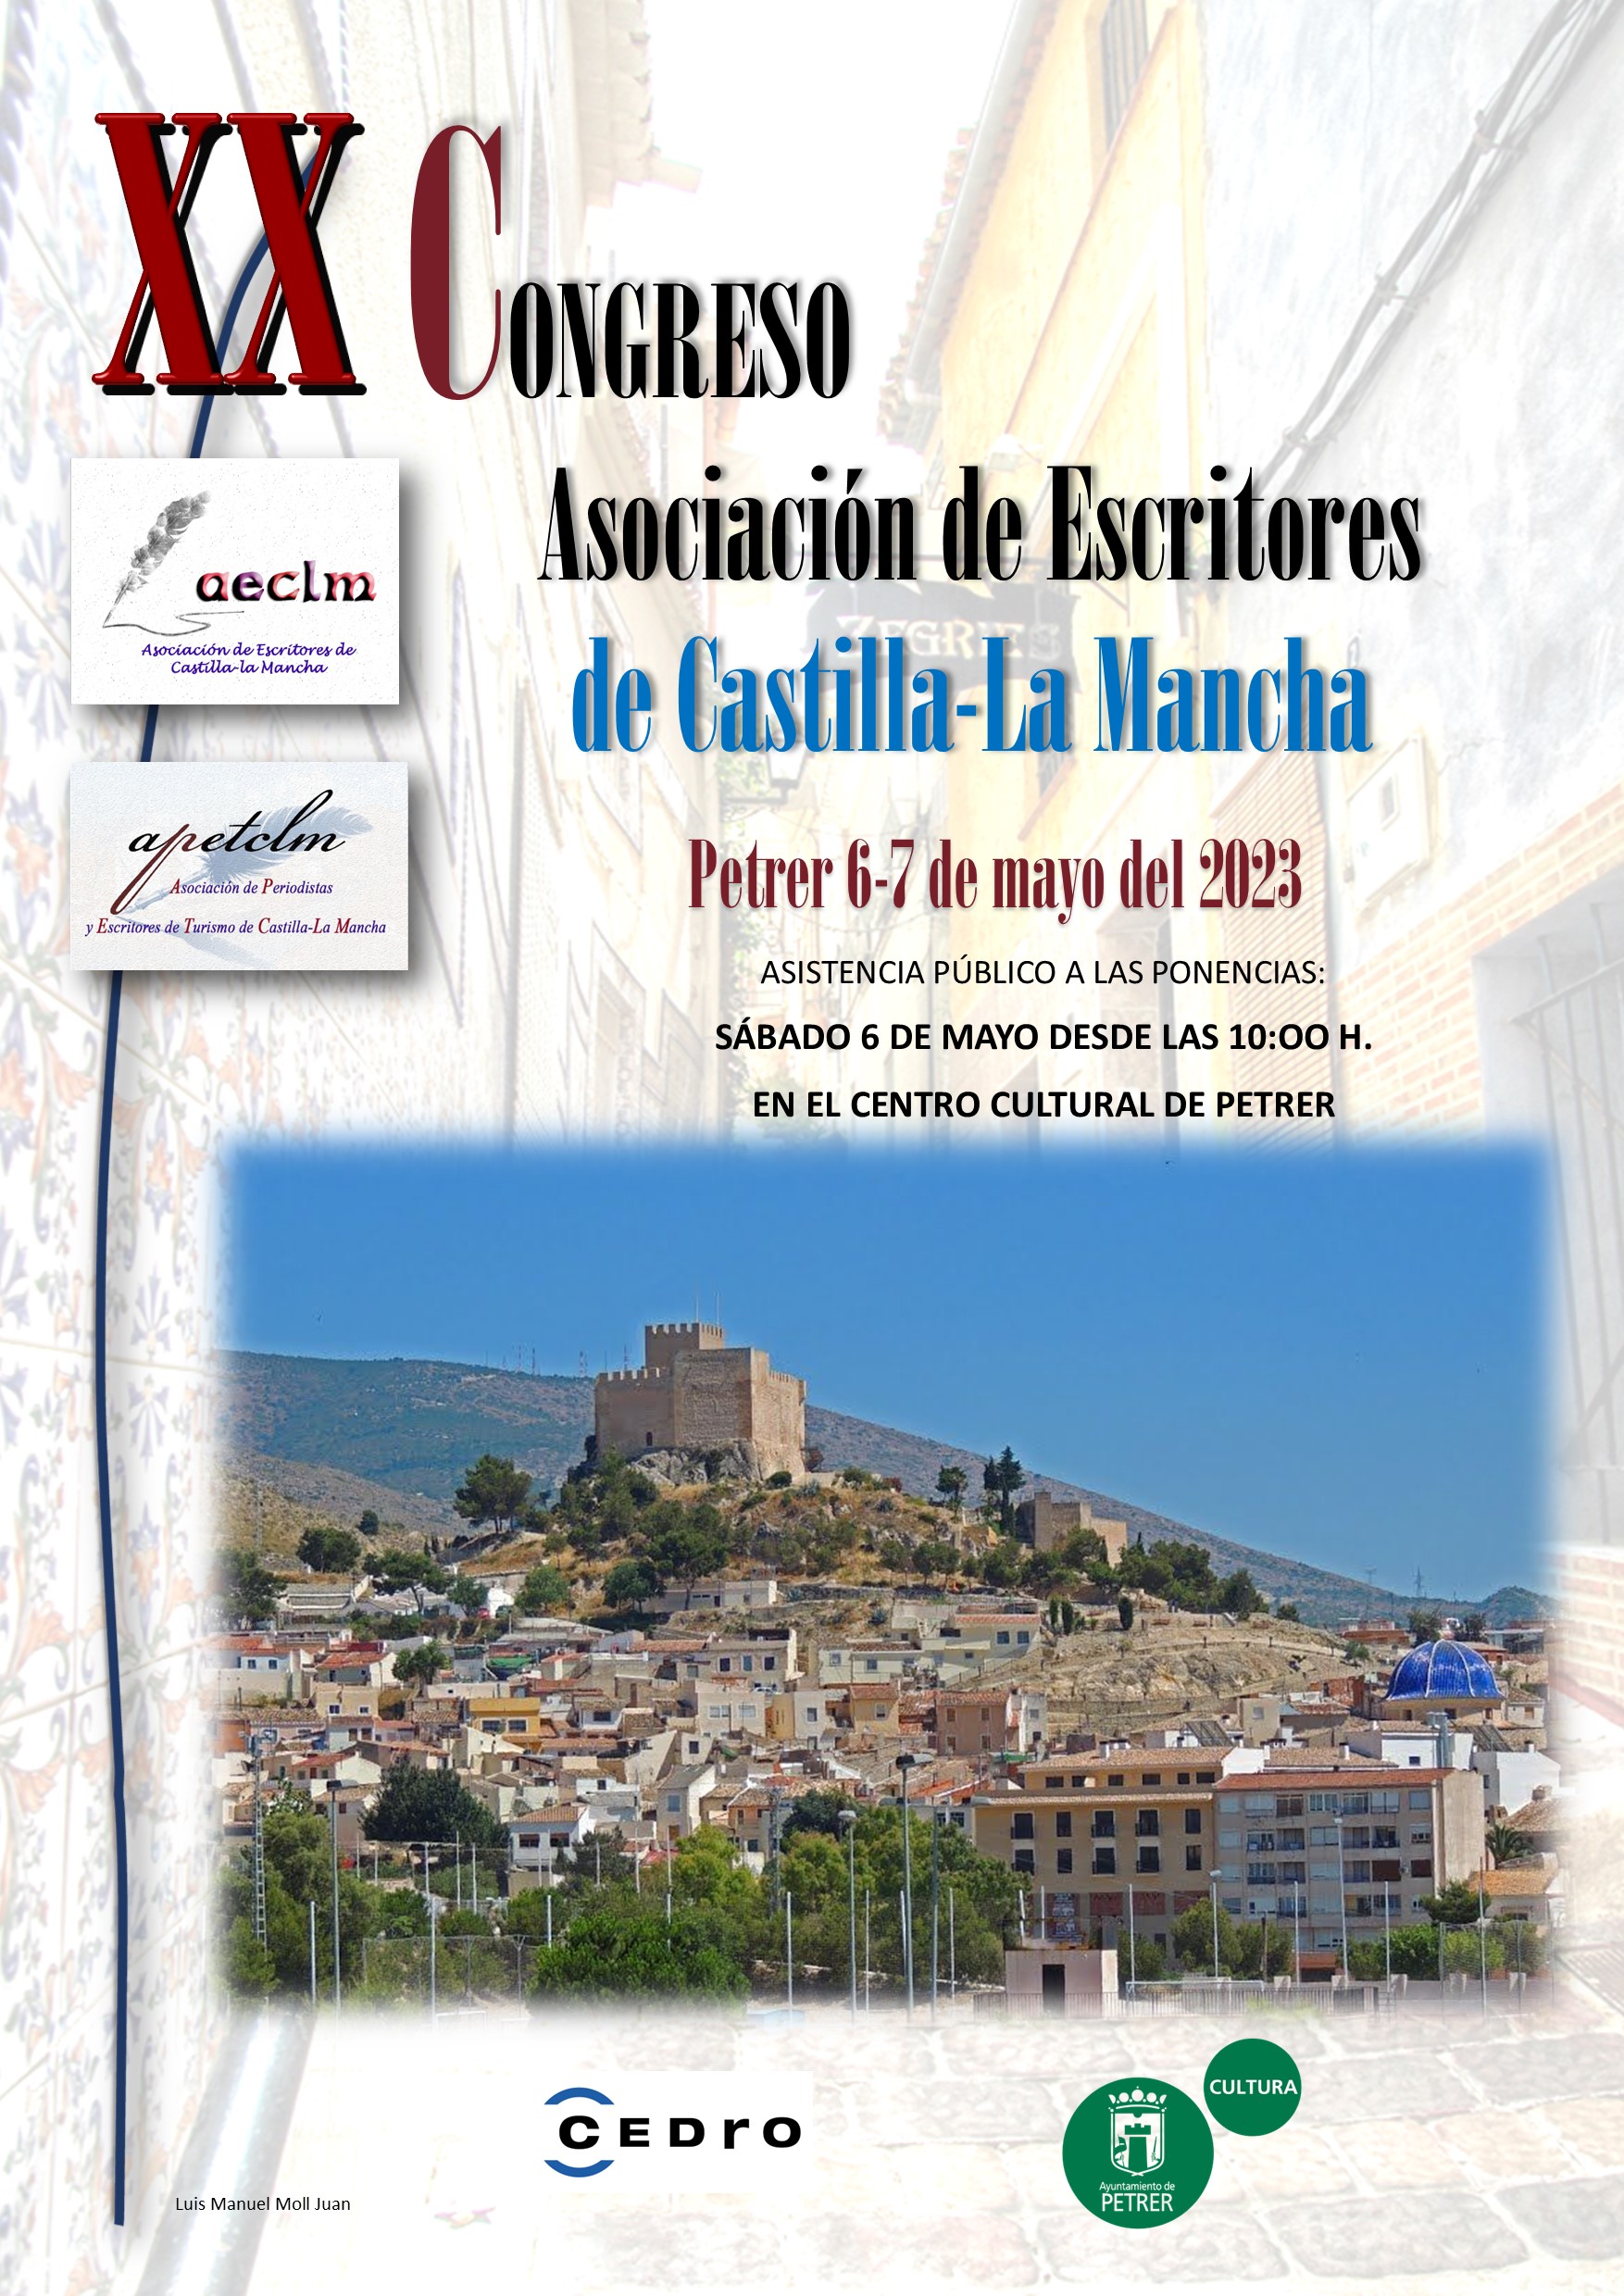 XX CONGRESO DE LA ASOCIACIÓN DE ESCRITORES DE CASTILLA-LA MANCHA EN PETRER-Alicante